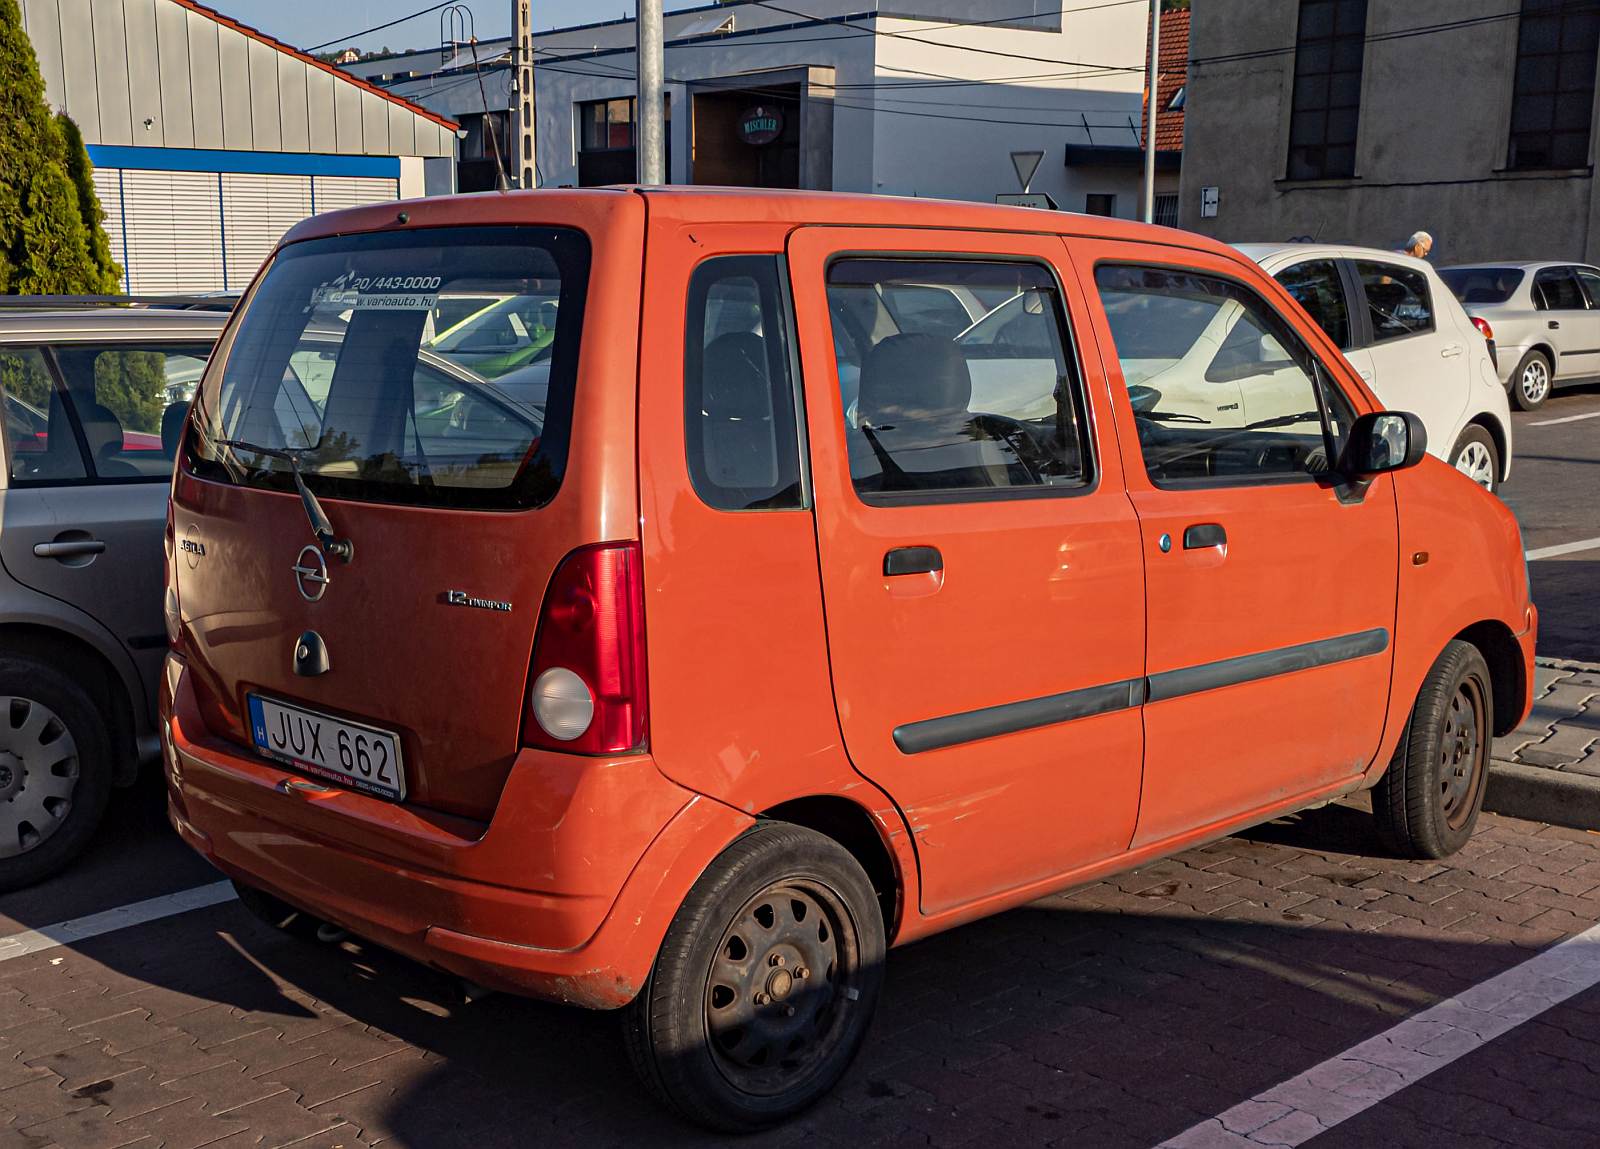 Rückansicht / Seitenansicht: Opel Agila (erste Generation) in orange. Foto: Juni, 2022.